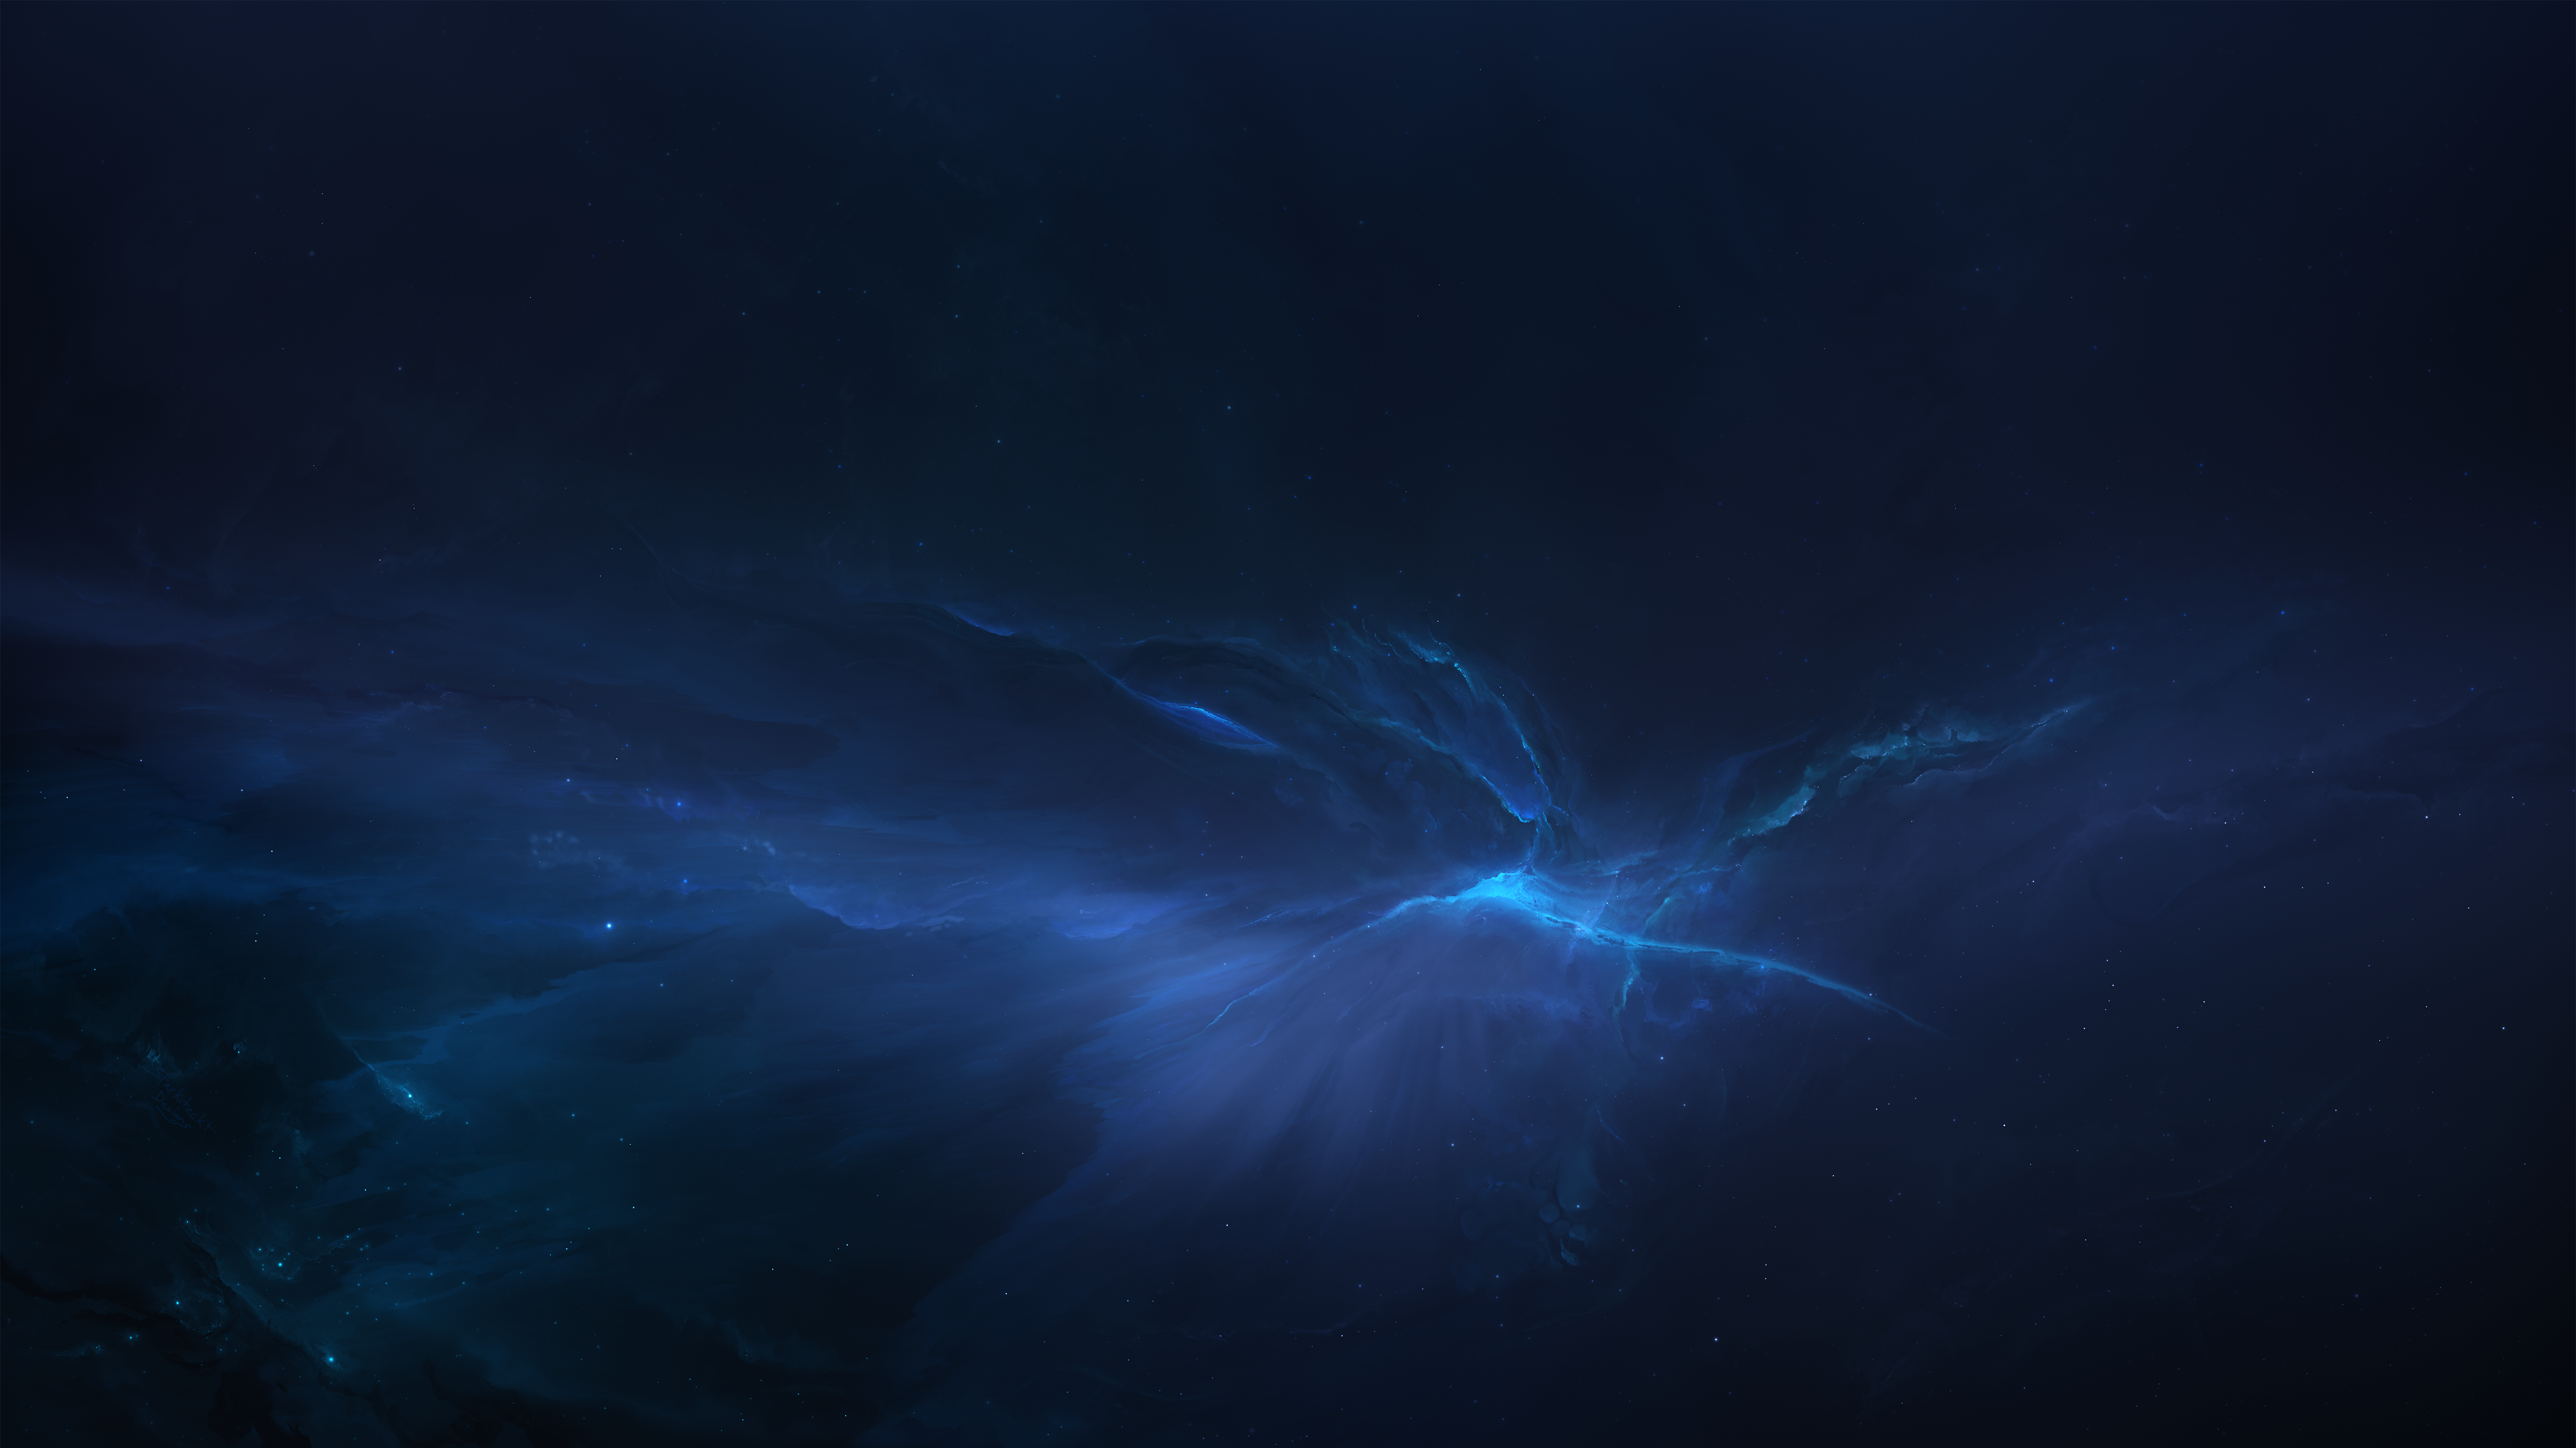 Sci Fi Nebula HD Wallpaper And Background